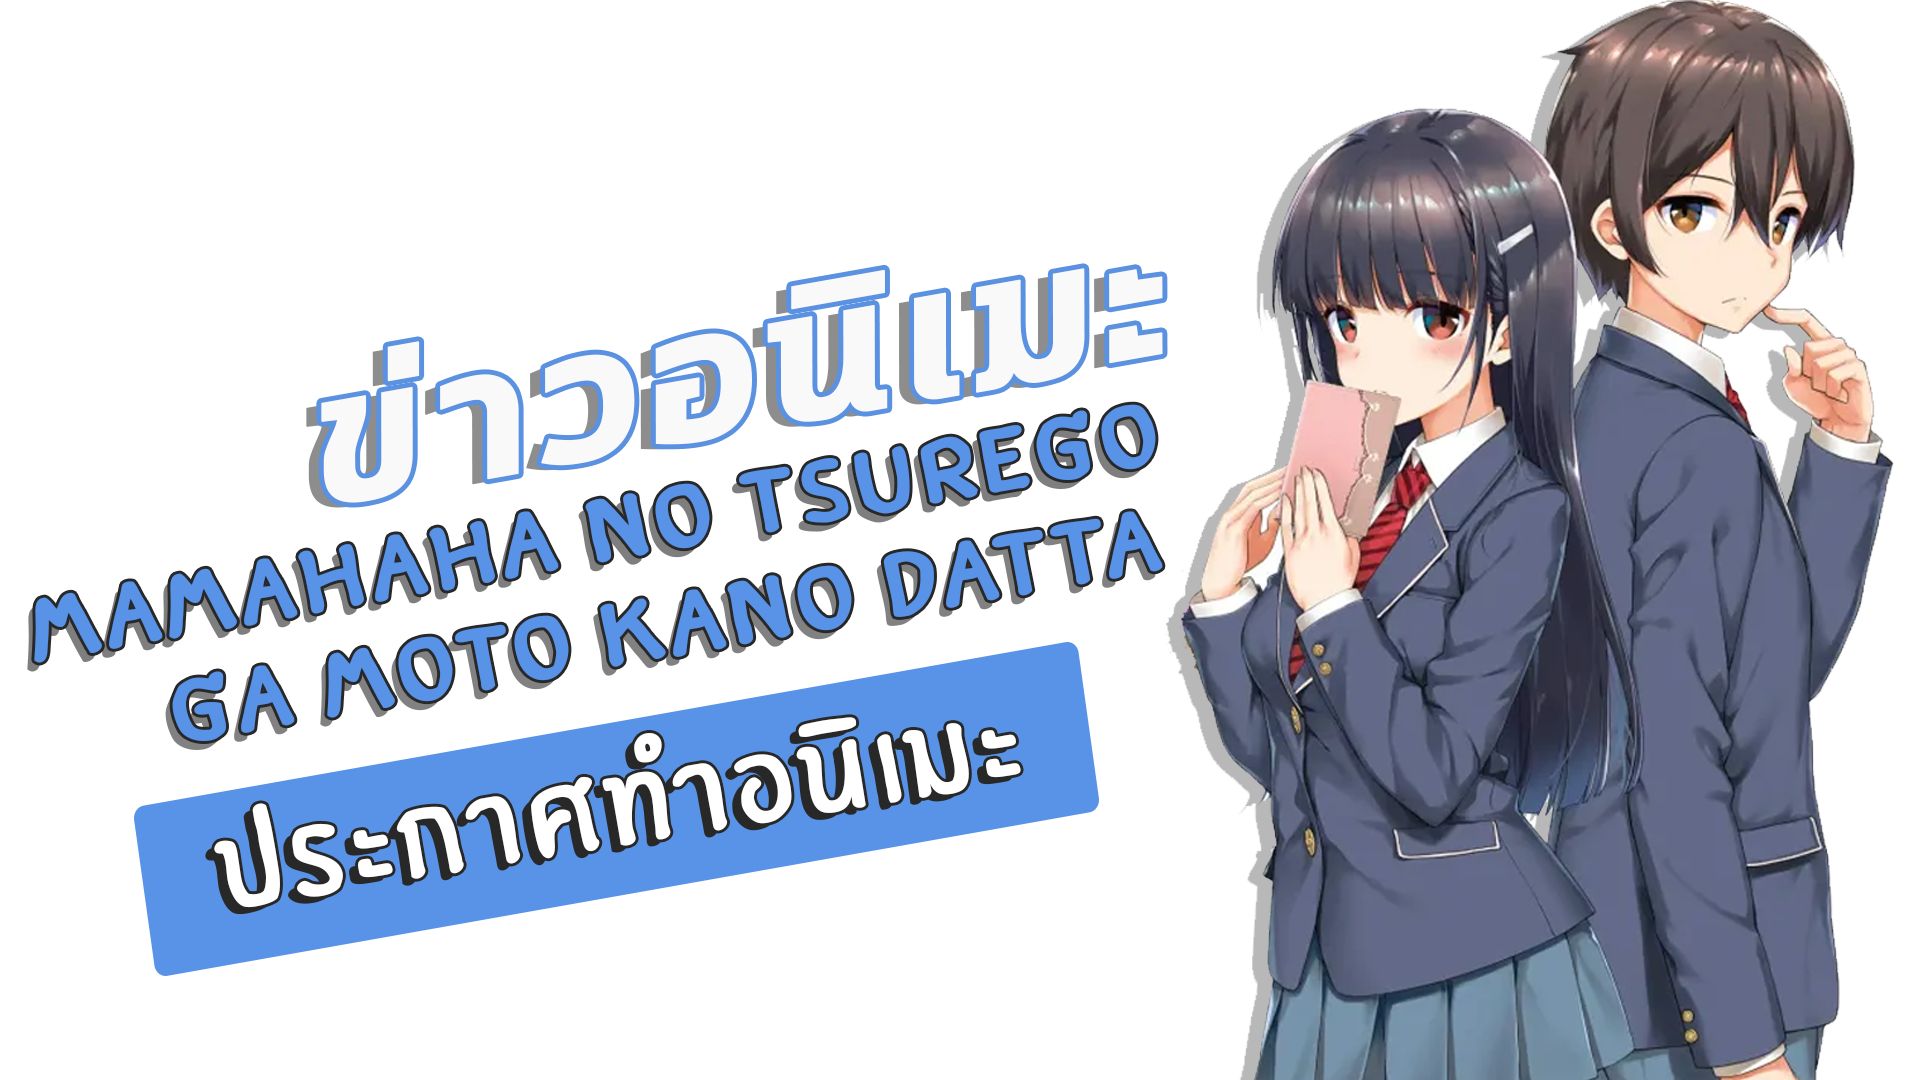 Mamahaha no Tsurego ga Moto Kano Datta - Anime ganha 2º vídeo promocional e  nova imagem - AnimeNew